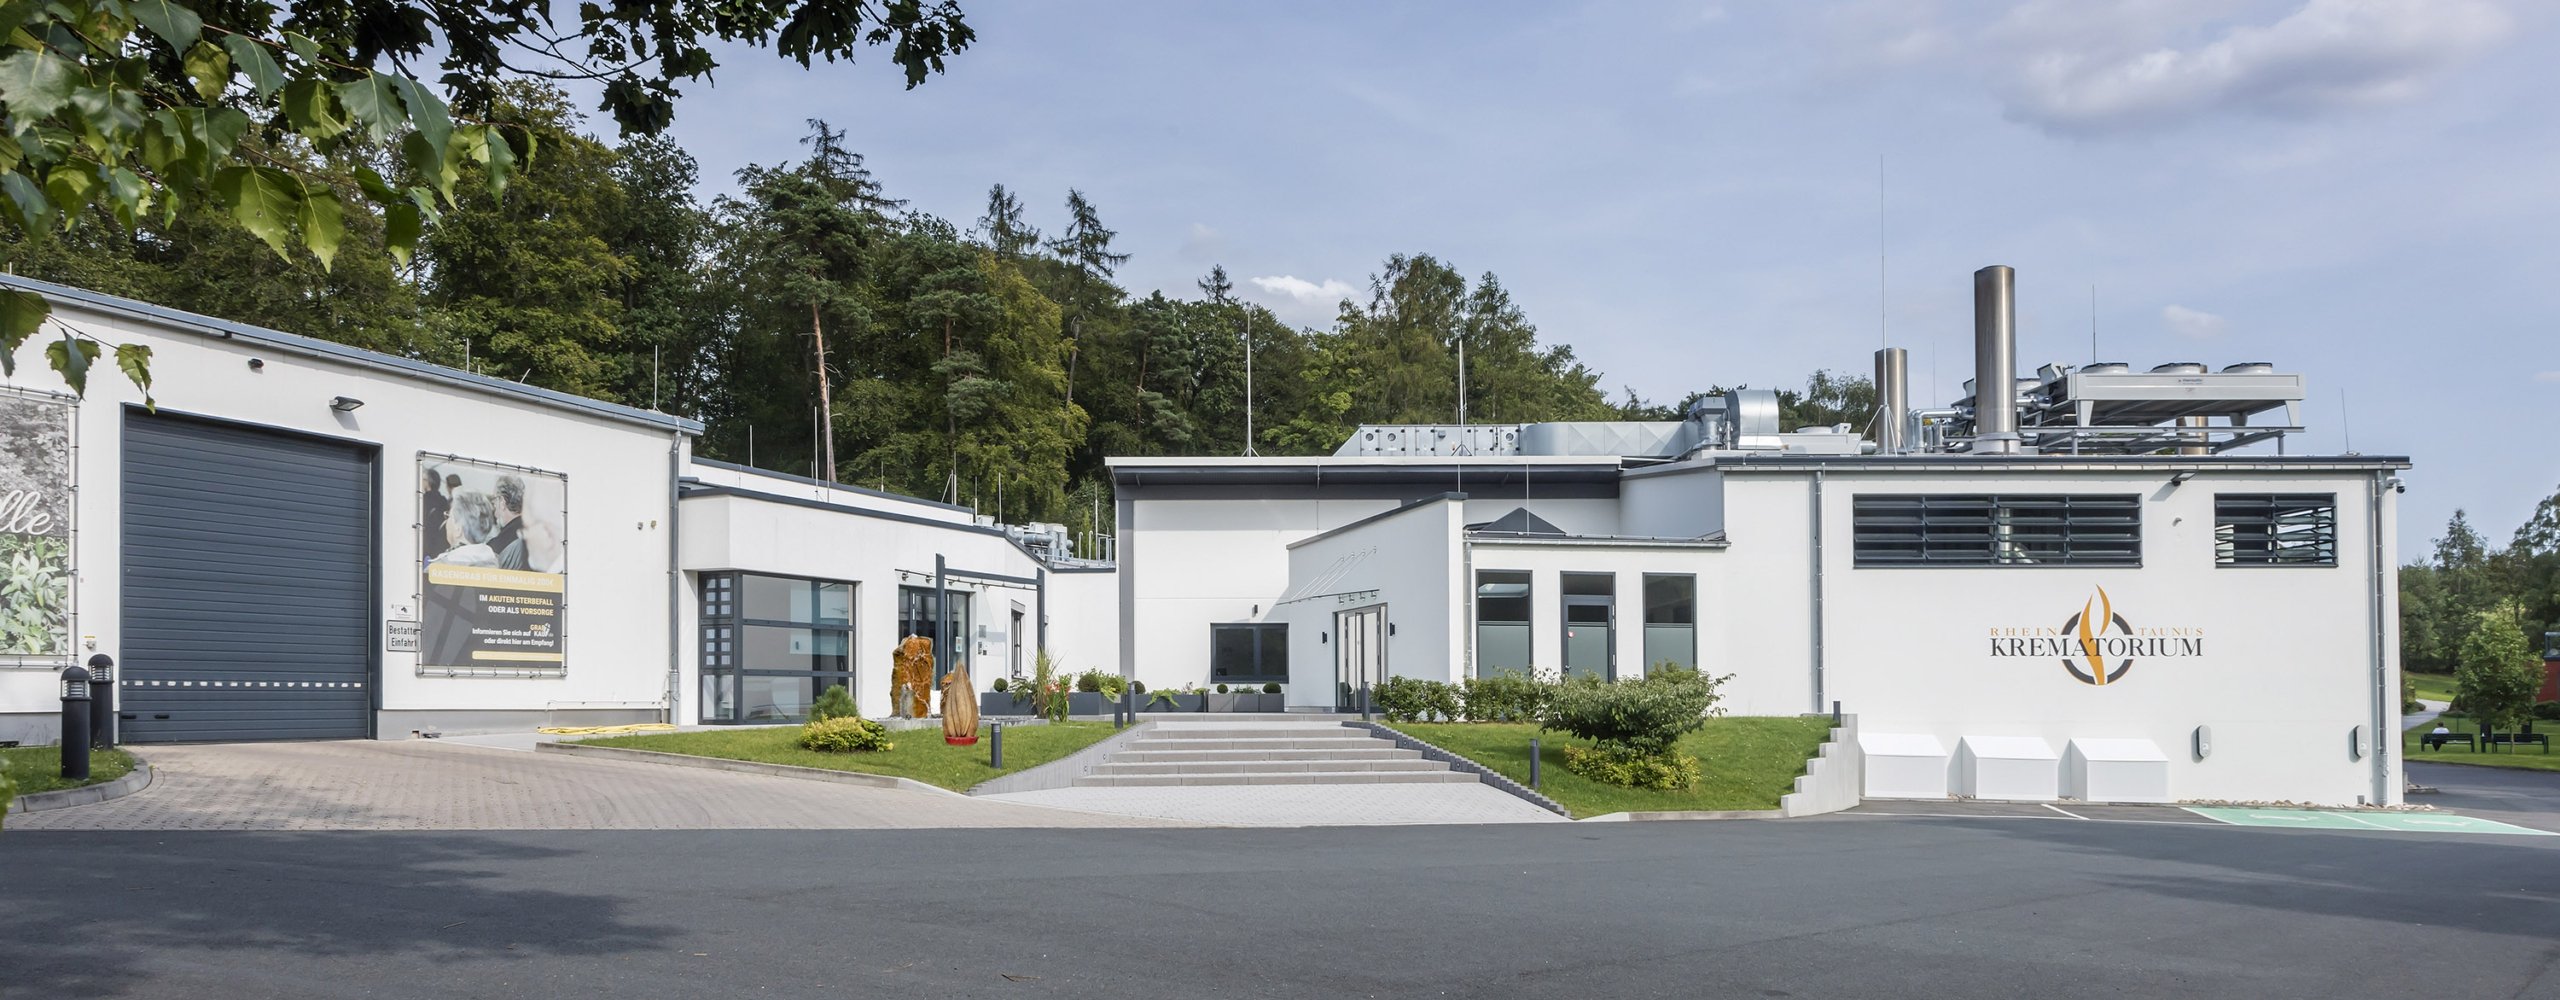 Eine strategische Partnerschaft zwischen Rhein-Taunus-Krematorium und Funecap